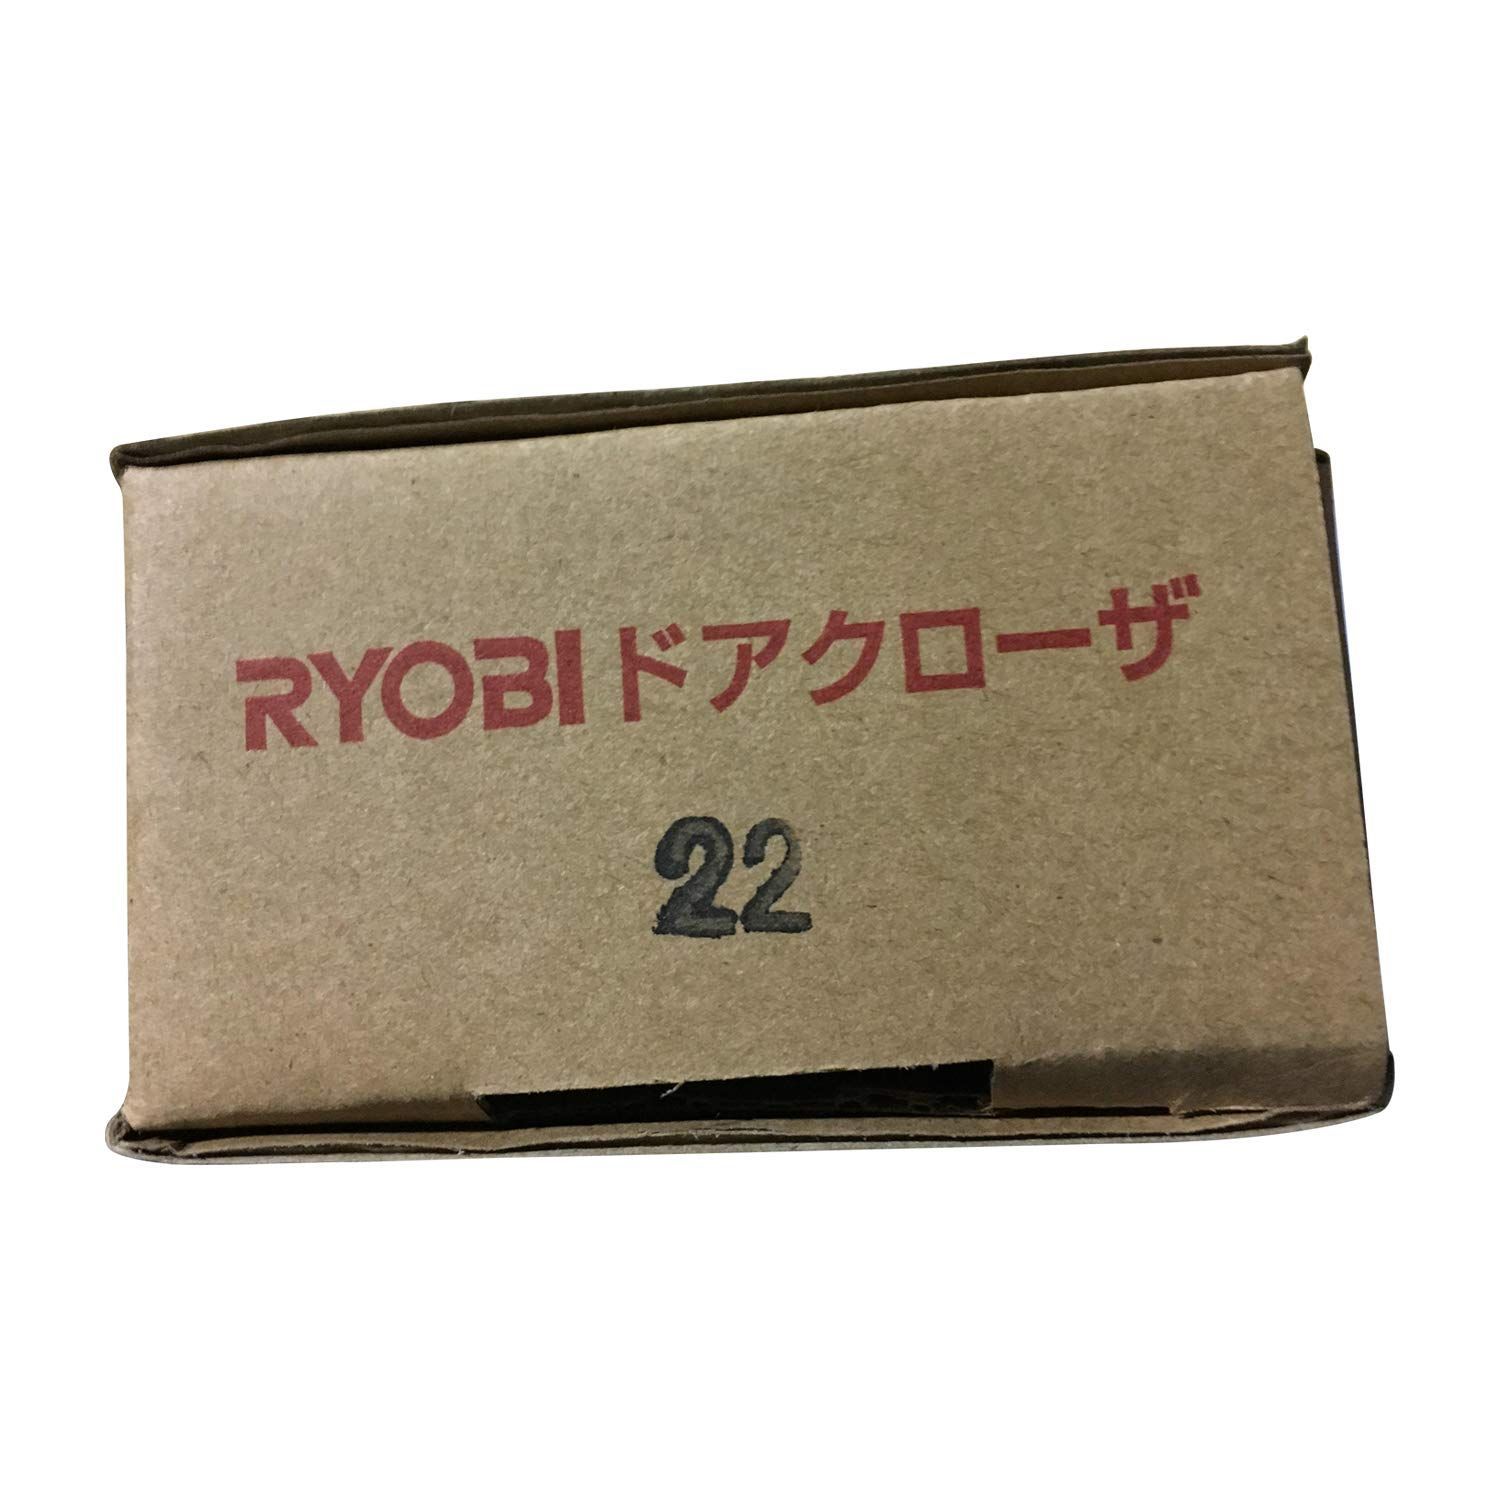 RYOBI(リョービ) ドアクローザ B1003(90) 旧リョービ(RYOBI) - 4